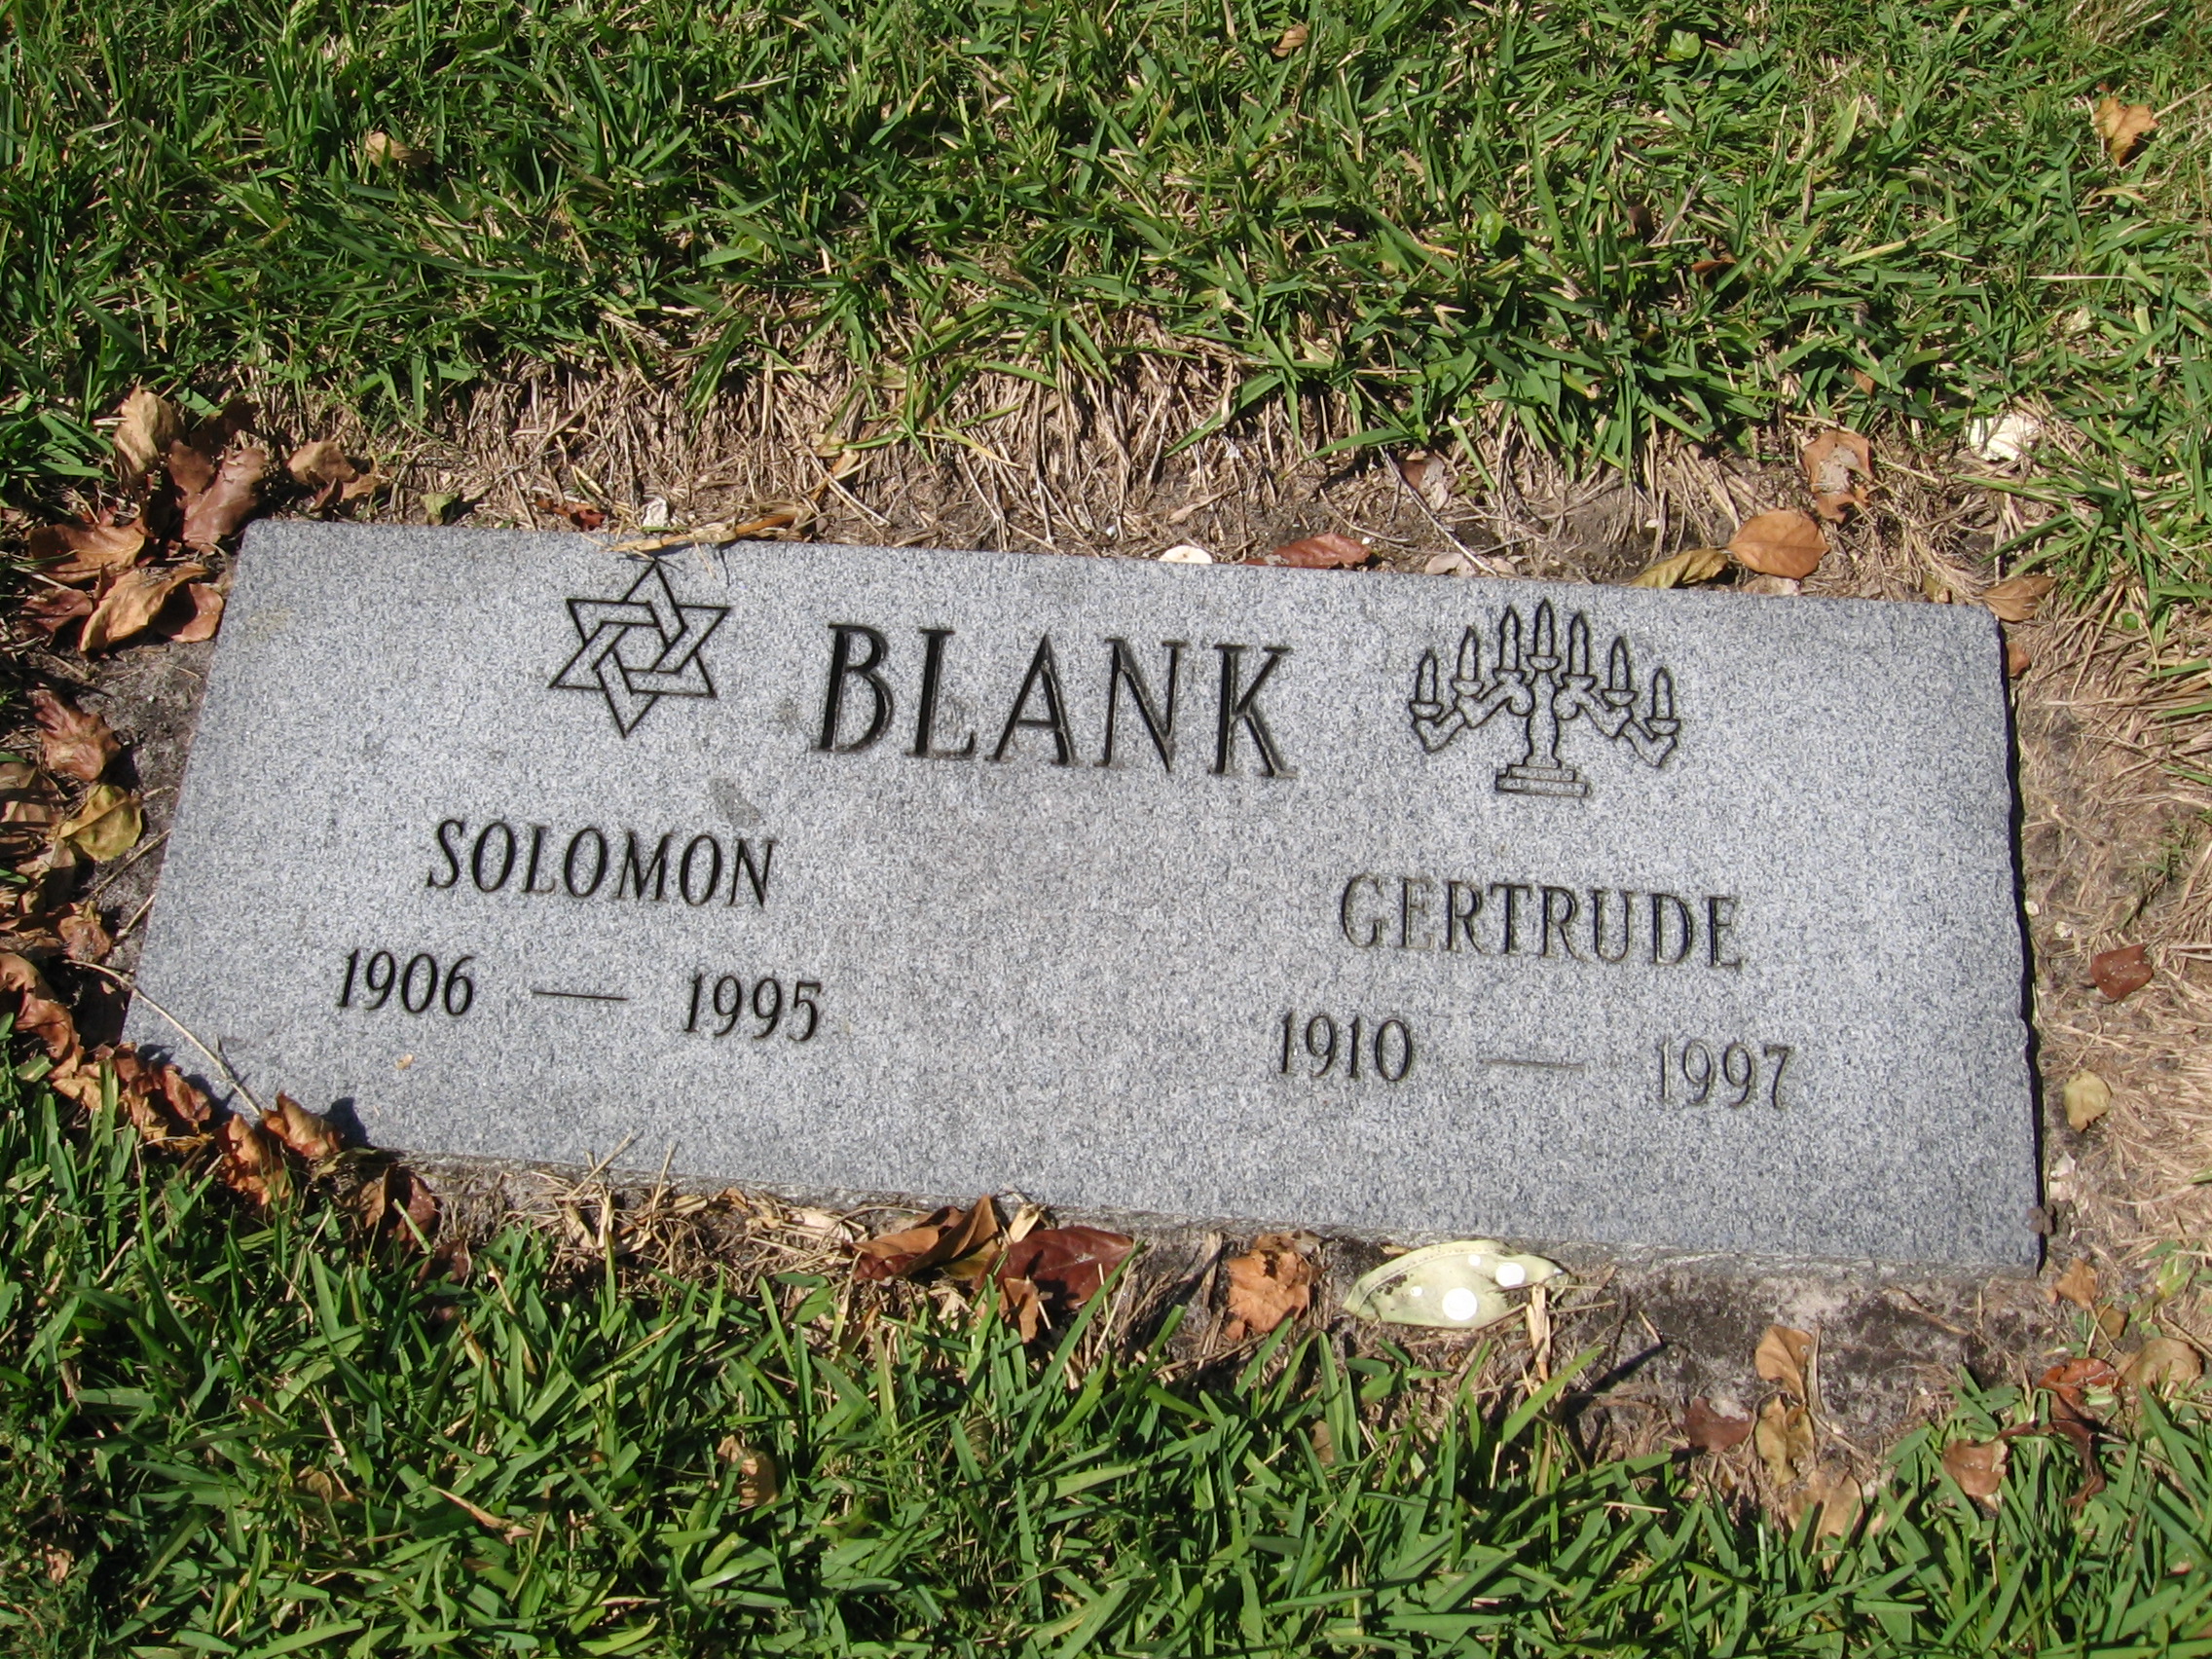 Solomon Blank